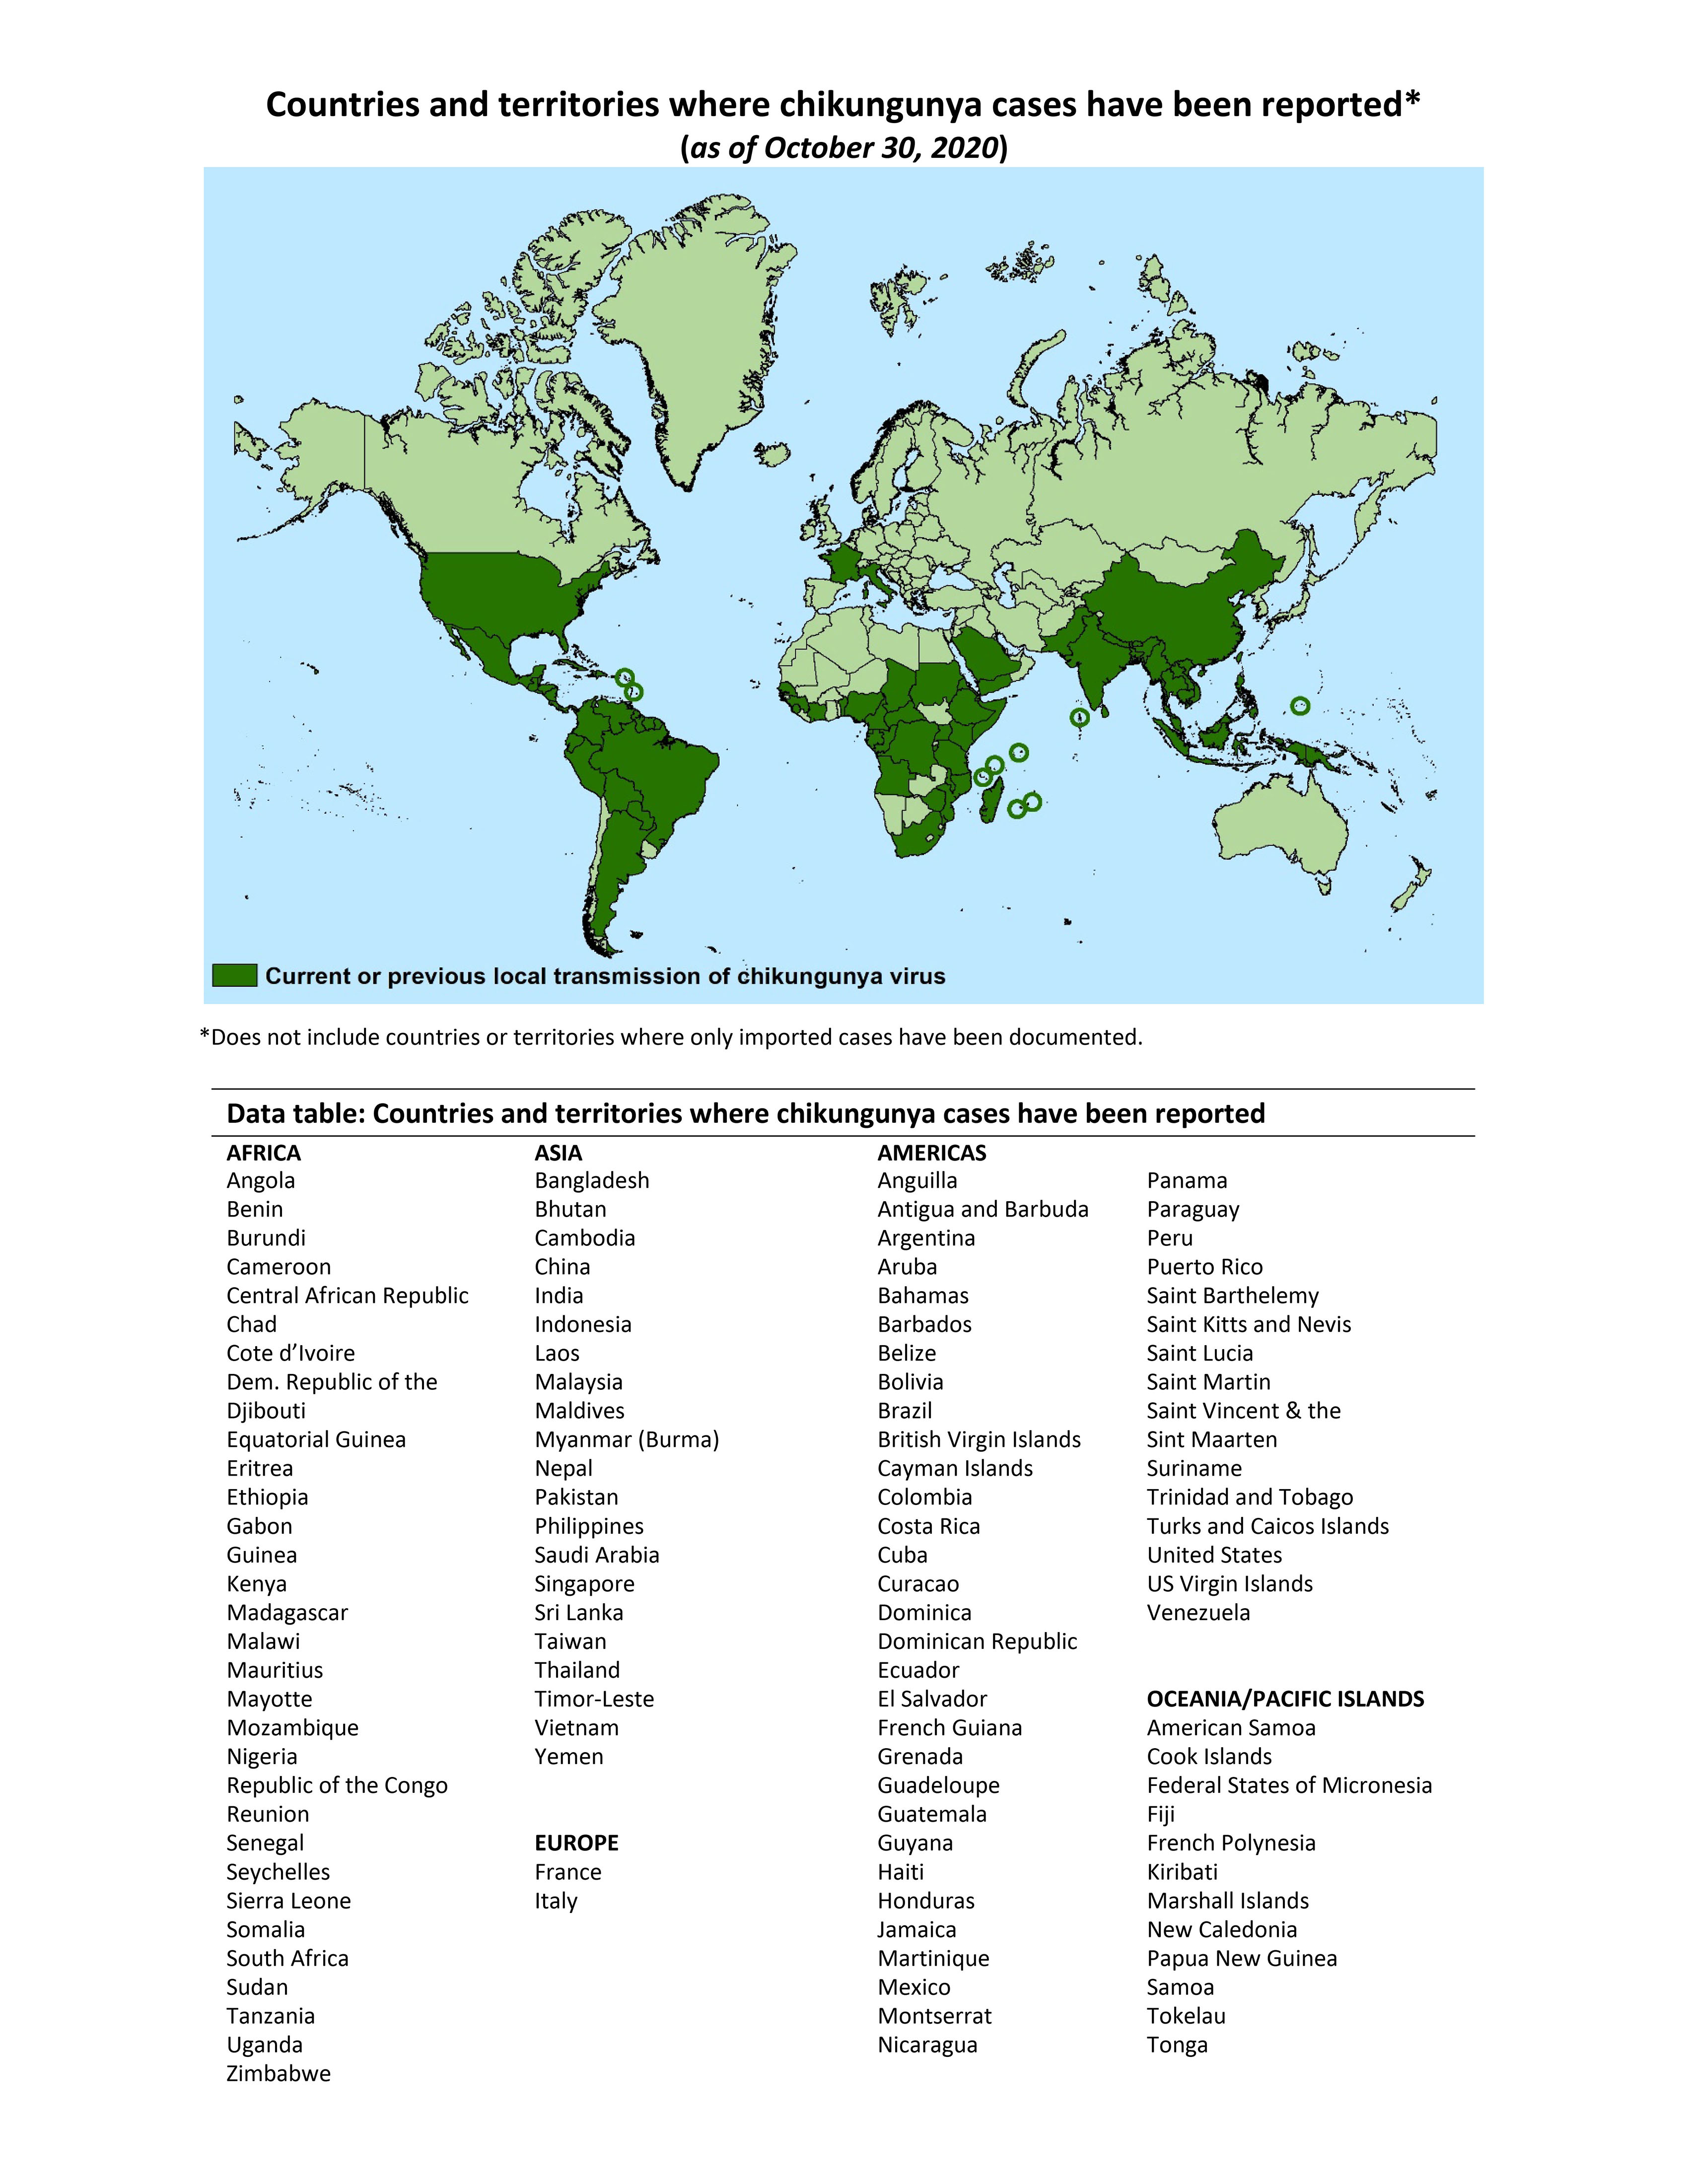 Carte montrant la zone de distribution du chikungunya en vert foncé.